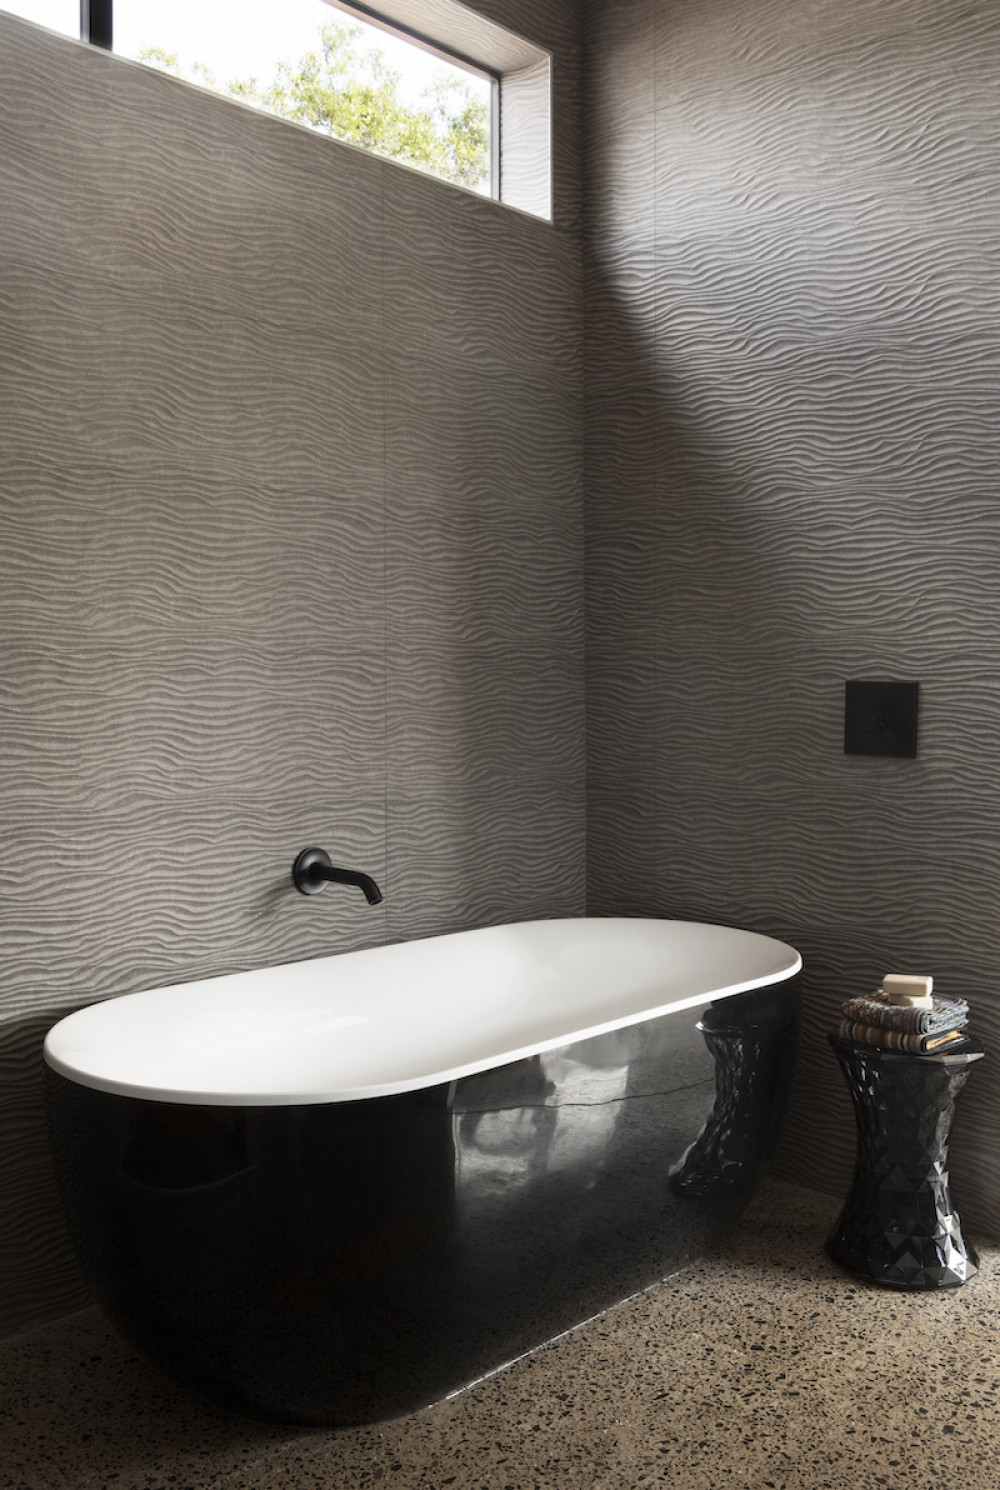 black-and-white-bathroom-tub-black-faucet-interior-design